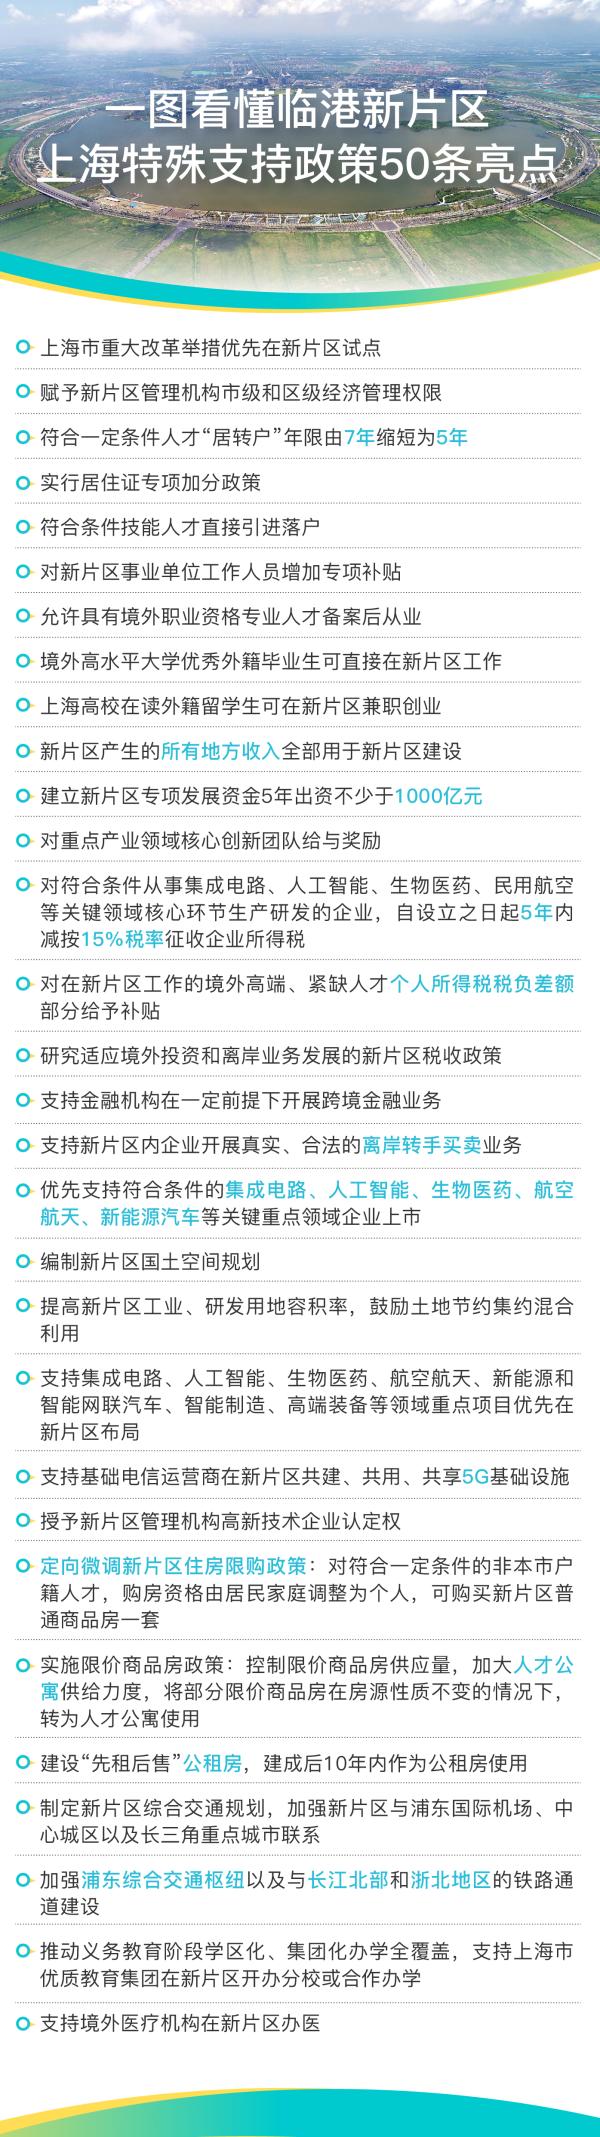 一图读懂｜上海临港新片区高质量发展实施特殊支持政策50条